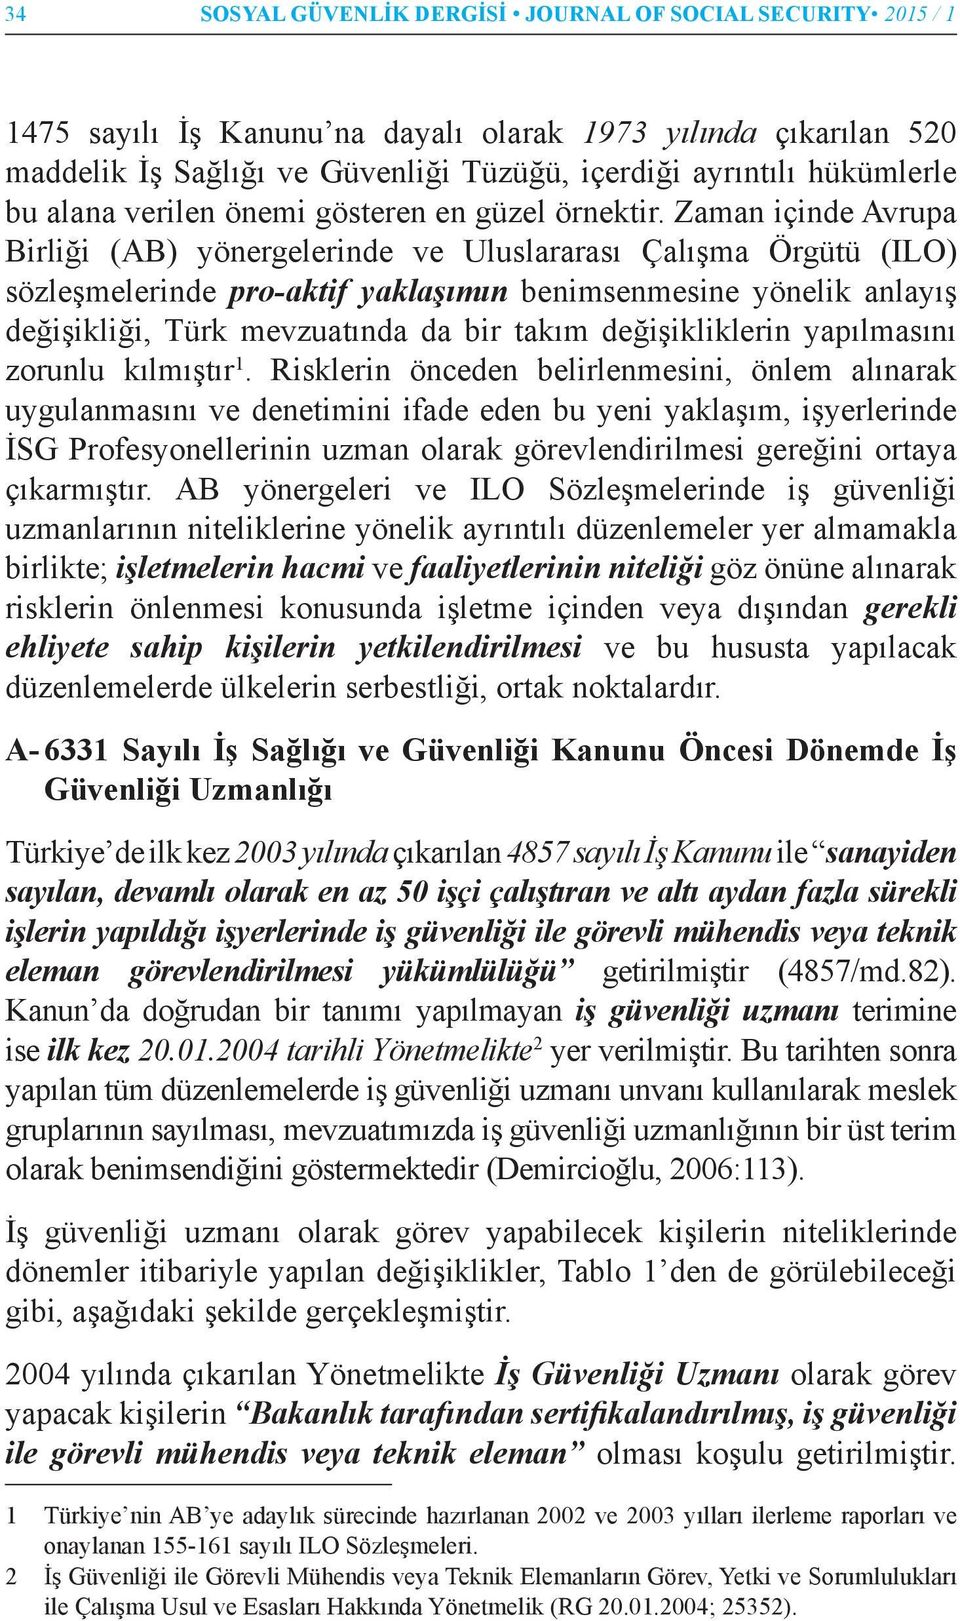 Zaman içinde Avrupa Birliği (AB) yönergelerinde ve Uluslararası Çalışma Örgütü (ILO) sözleşmelerinde pro-aktif yaklaşımın benimsenmesine yönelik anlayış değişikliği, Türk mevzuatında da bir takım